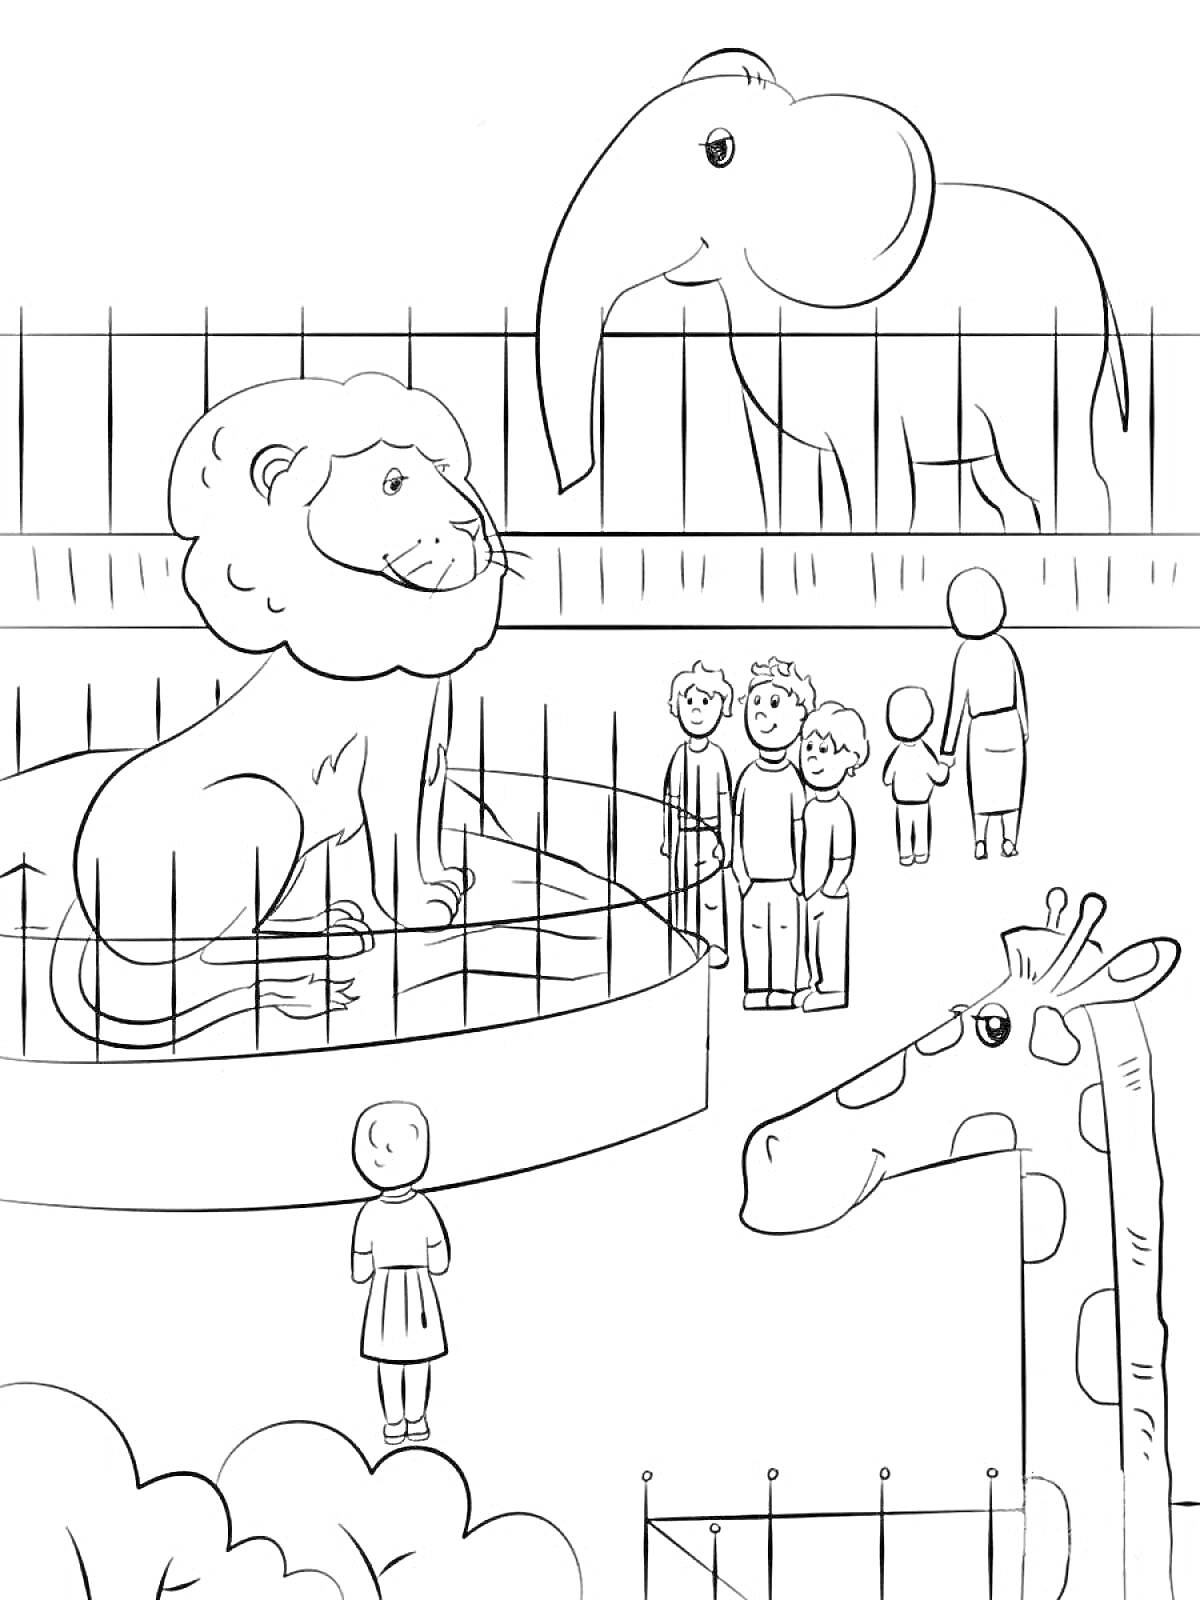  Зоопарк с львом, жирафом, слоном и посетителями